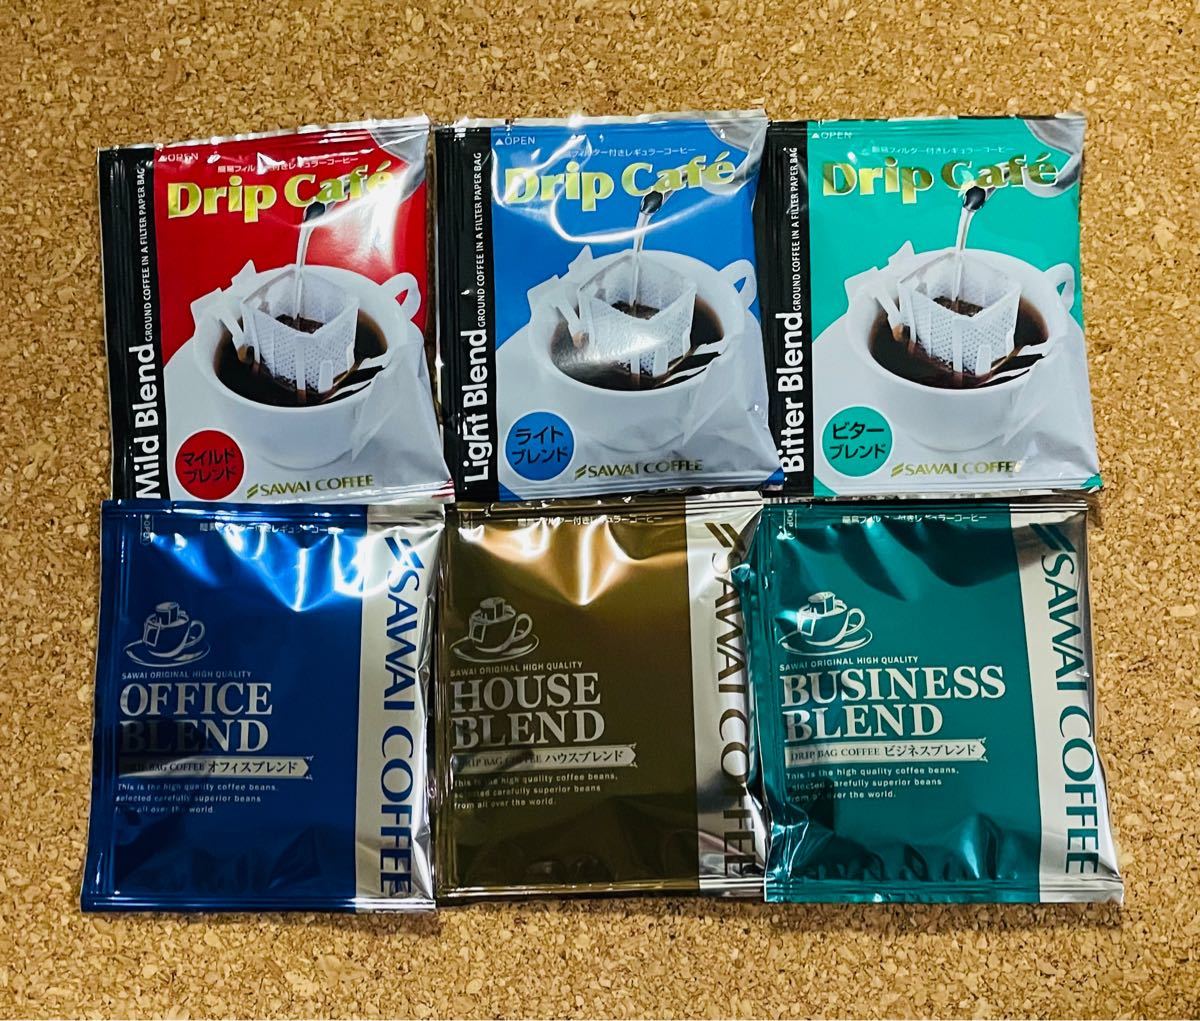 澤井珈琲  ドリップコーヒー 20種20杯分 